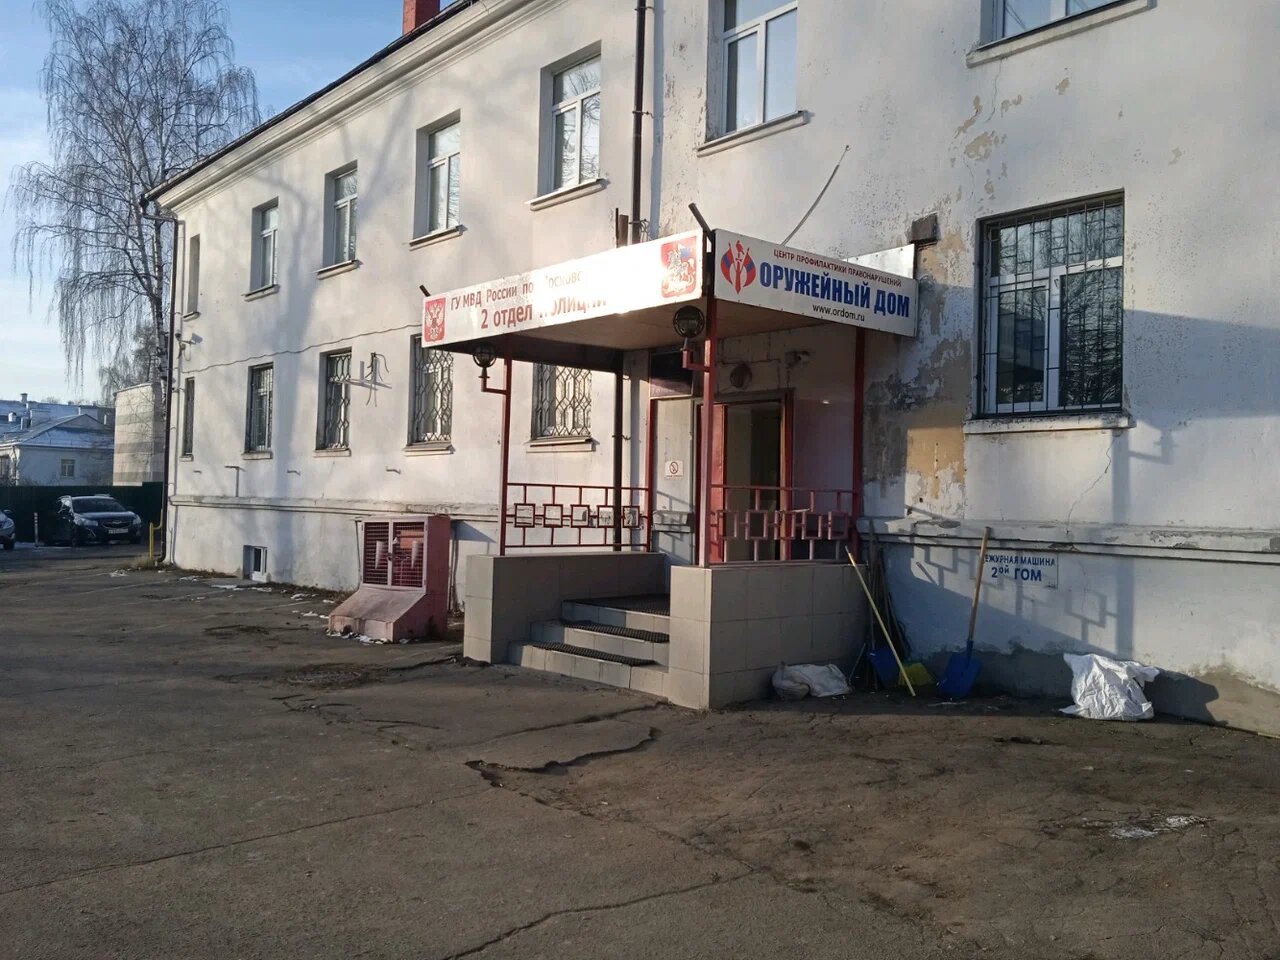 Вход в магазин "Оружейный дом" на Матросова в Мытищах